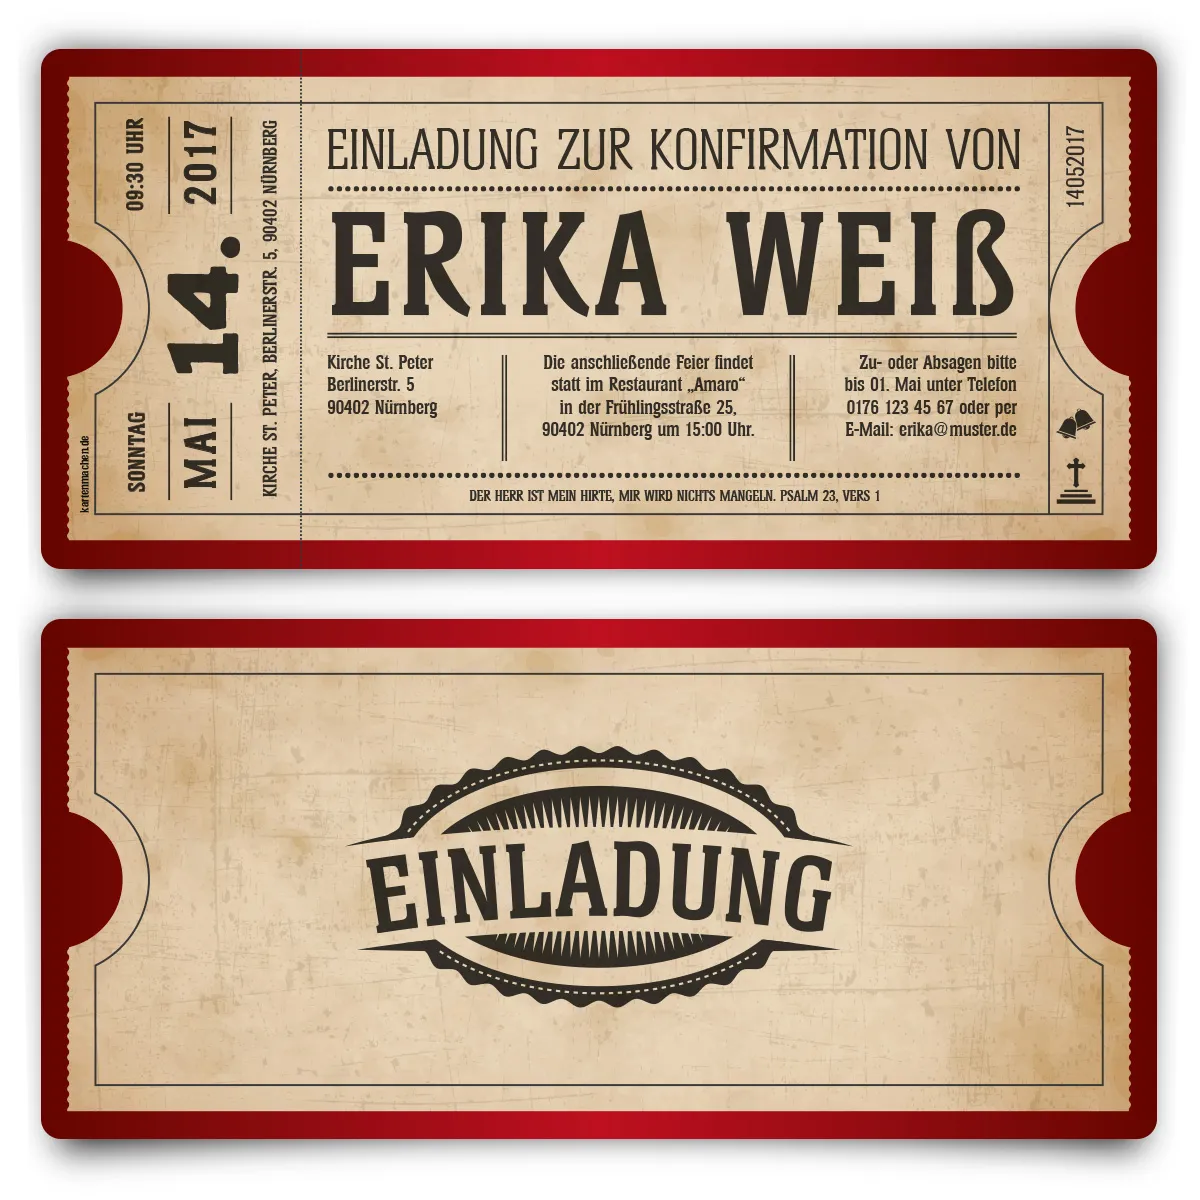 Konfirmation Einladungskarten - Vintage Ticket in Rot